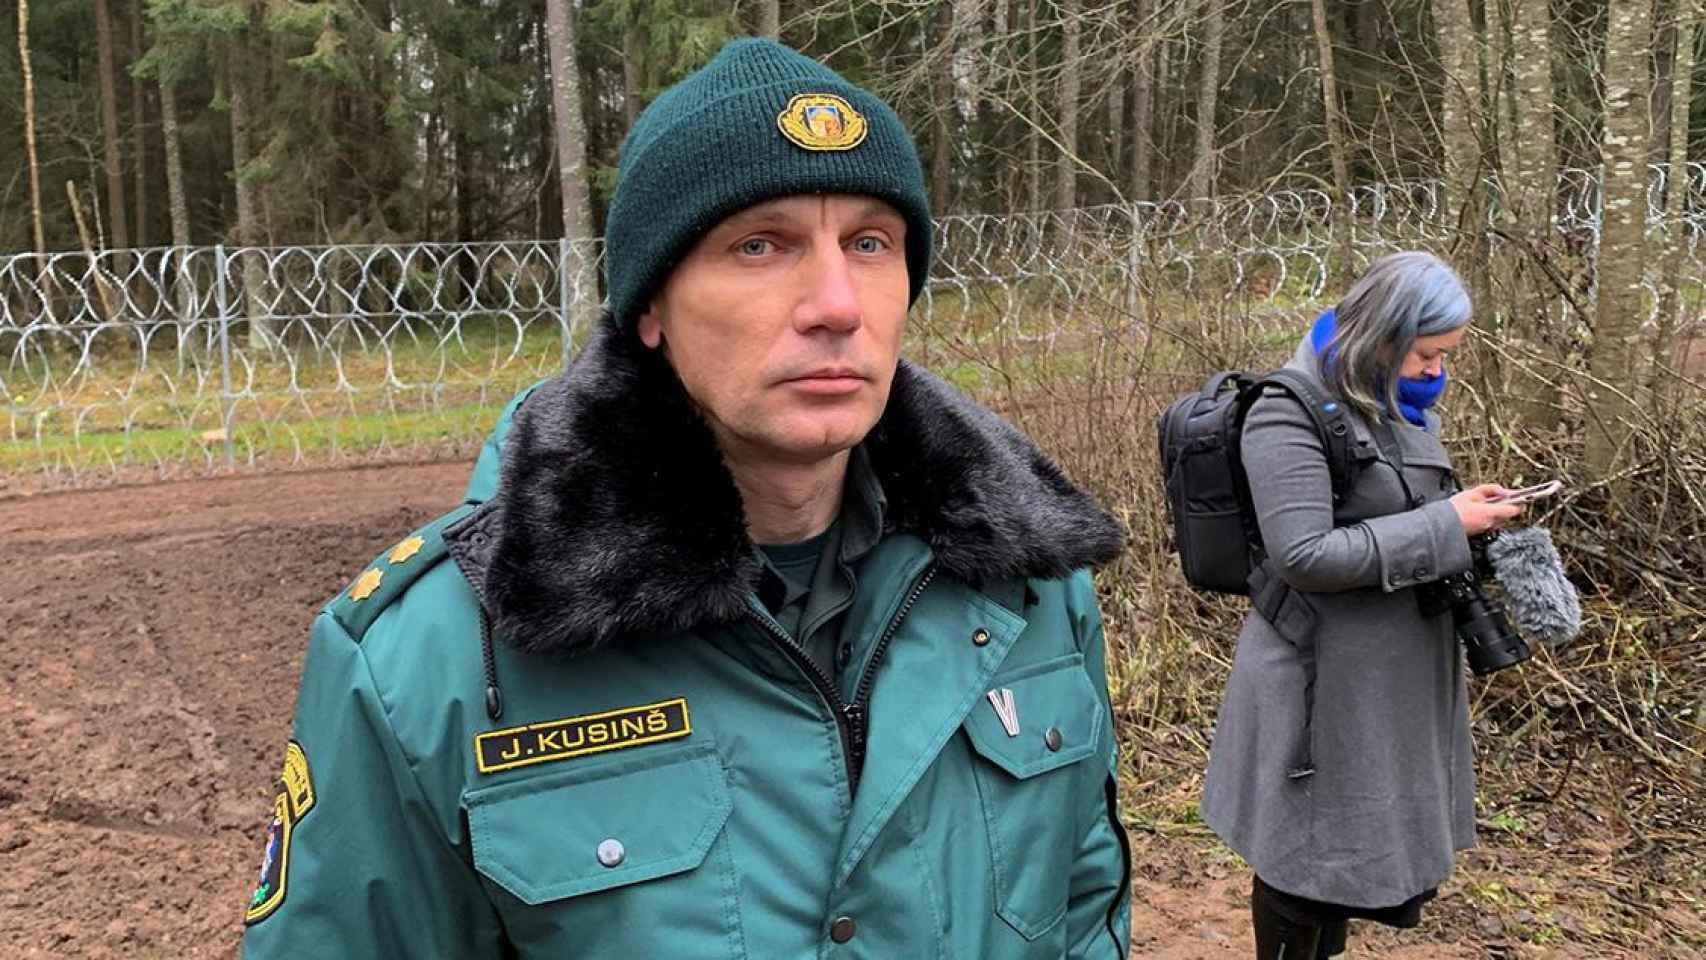 El día en imágenes: Juris Kusins, subdirector del distrito de la frontera regional en Daugavpils, delante de la valla provisional levantada por Letonia en su frontera con Bielorrusia / JURIS KAZA - EFE